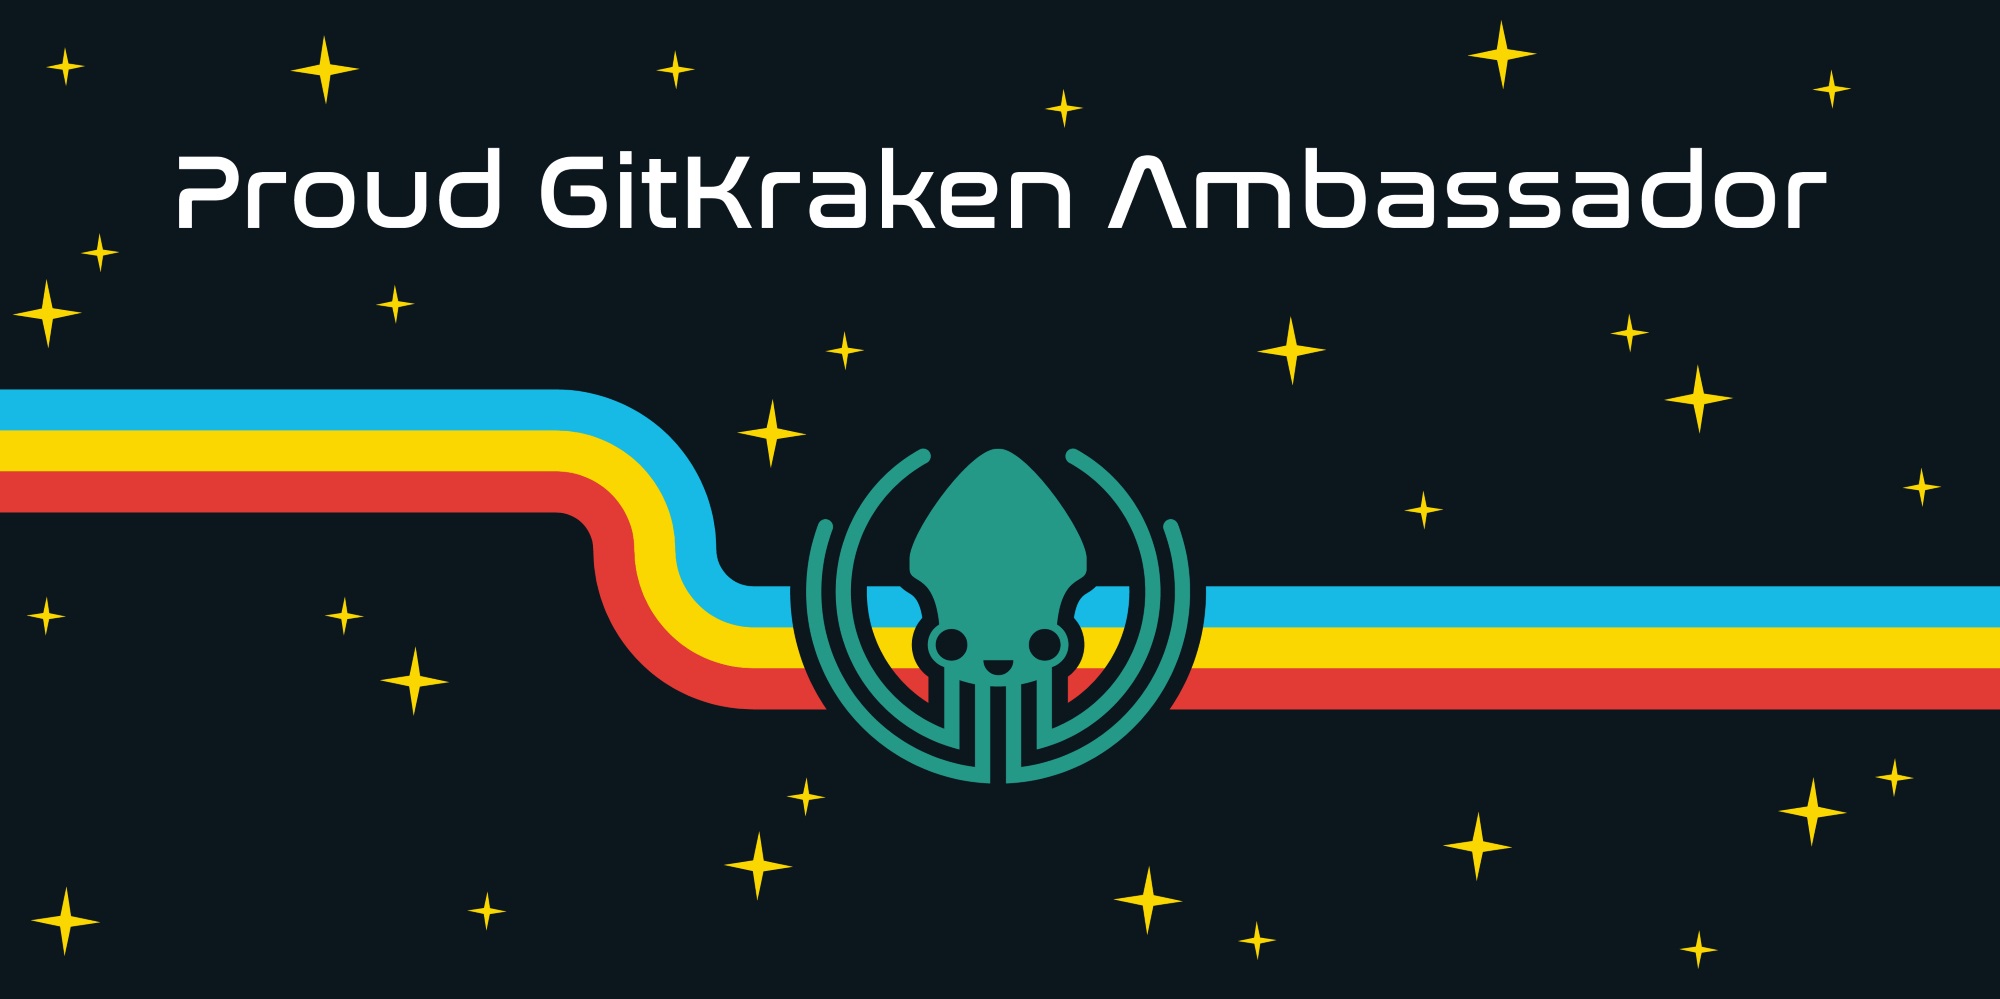 Becoming a GitKraken Ambassador